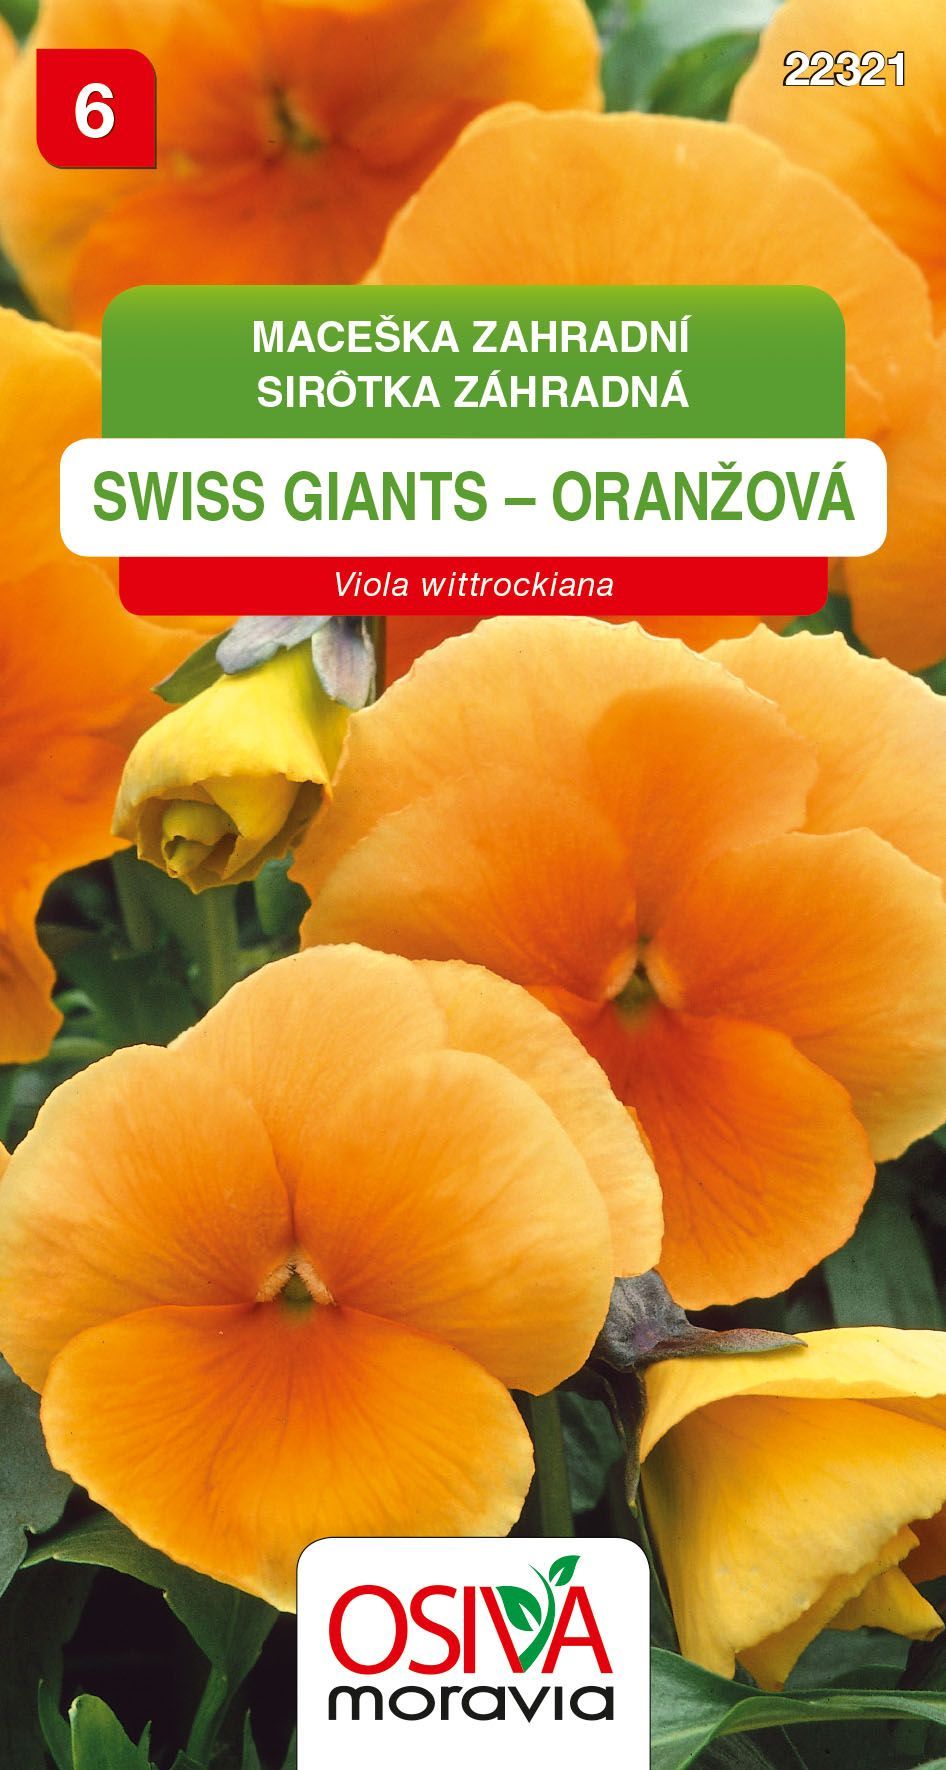 Maceška zahradní - Swiss Giants - oranžová